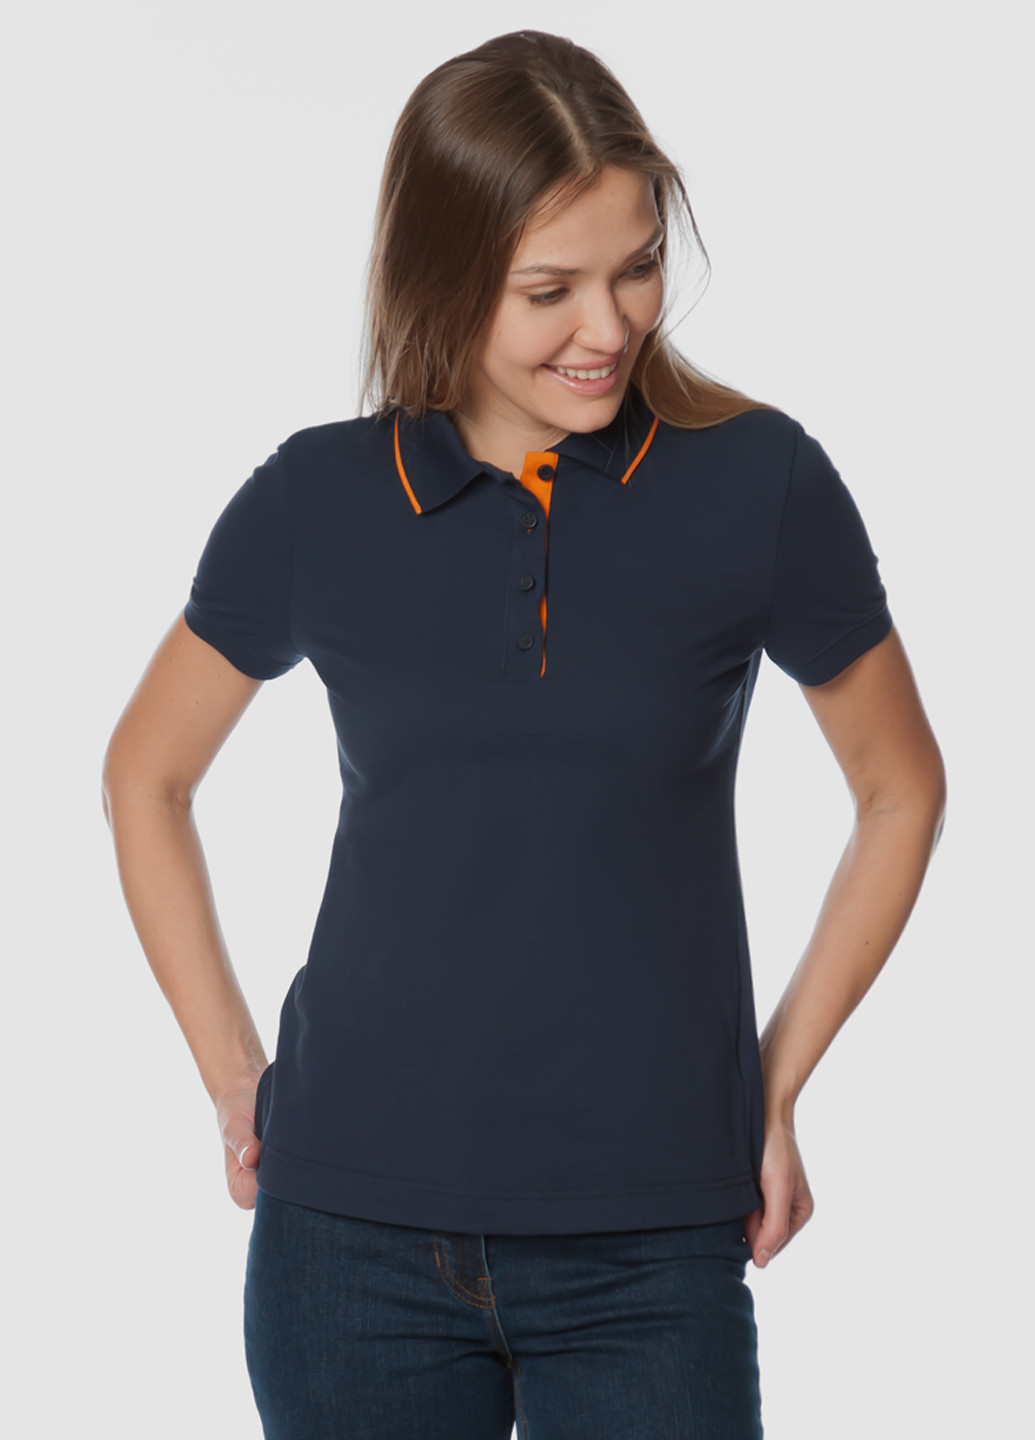 Синяя женская футболка-поло женское Arber однотонная